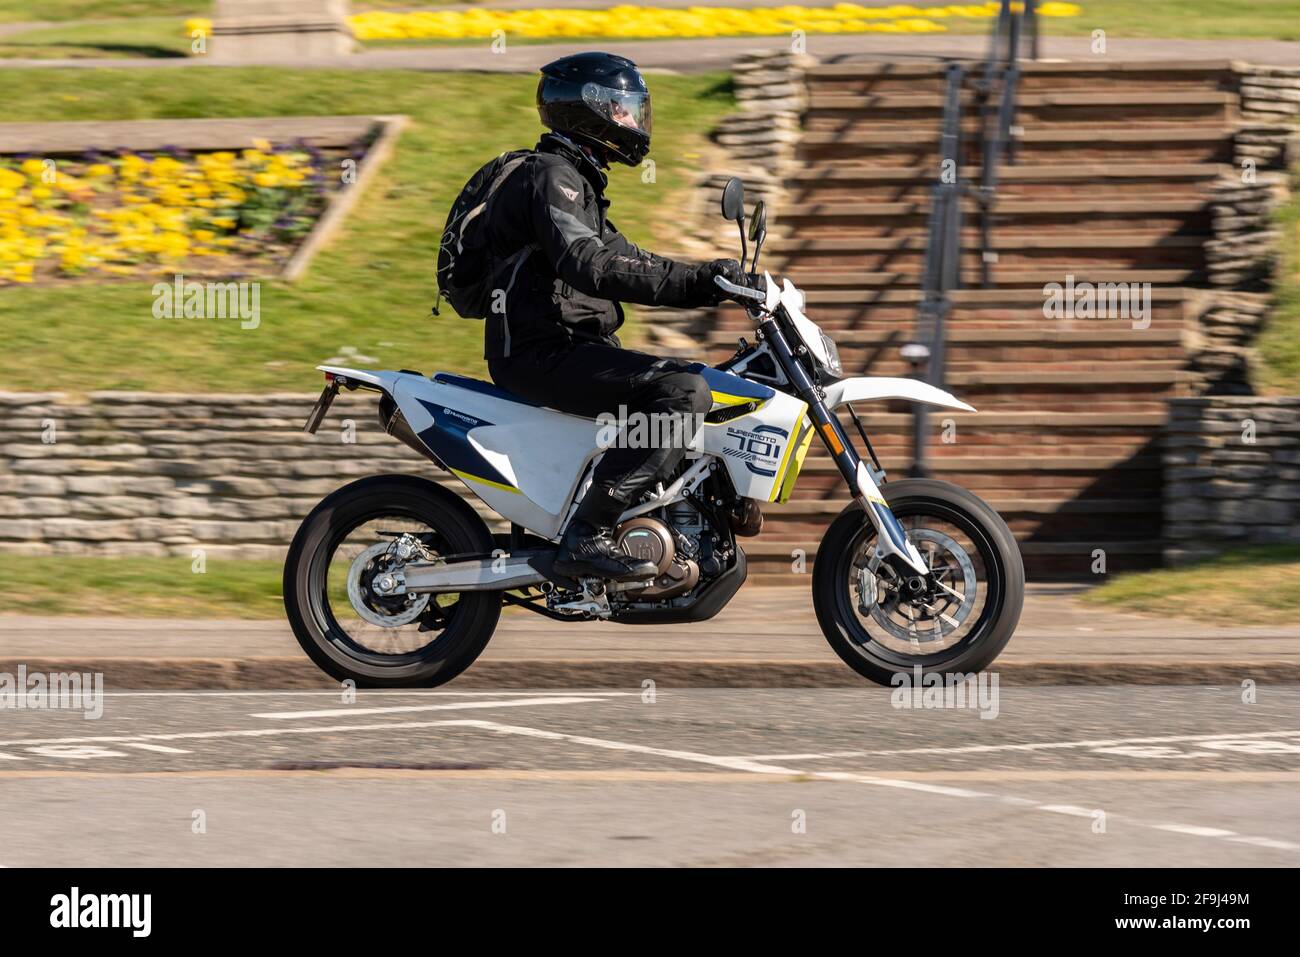 Pilote sur la moto Husqvarna Supermoto 701, motocycliste à Southend on Sea, Essex, Royaume-Uni, lors d'une journée ensoleillée et brillante du printemps. KTM Supermoto Banque D'Images